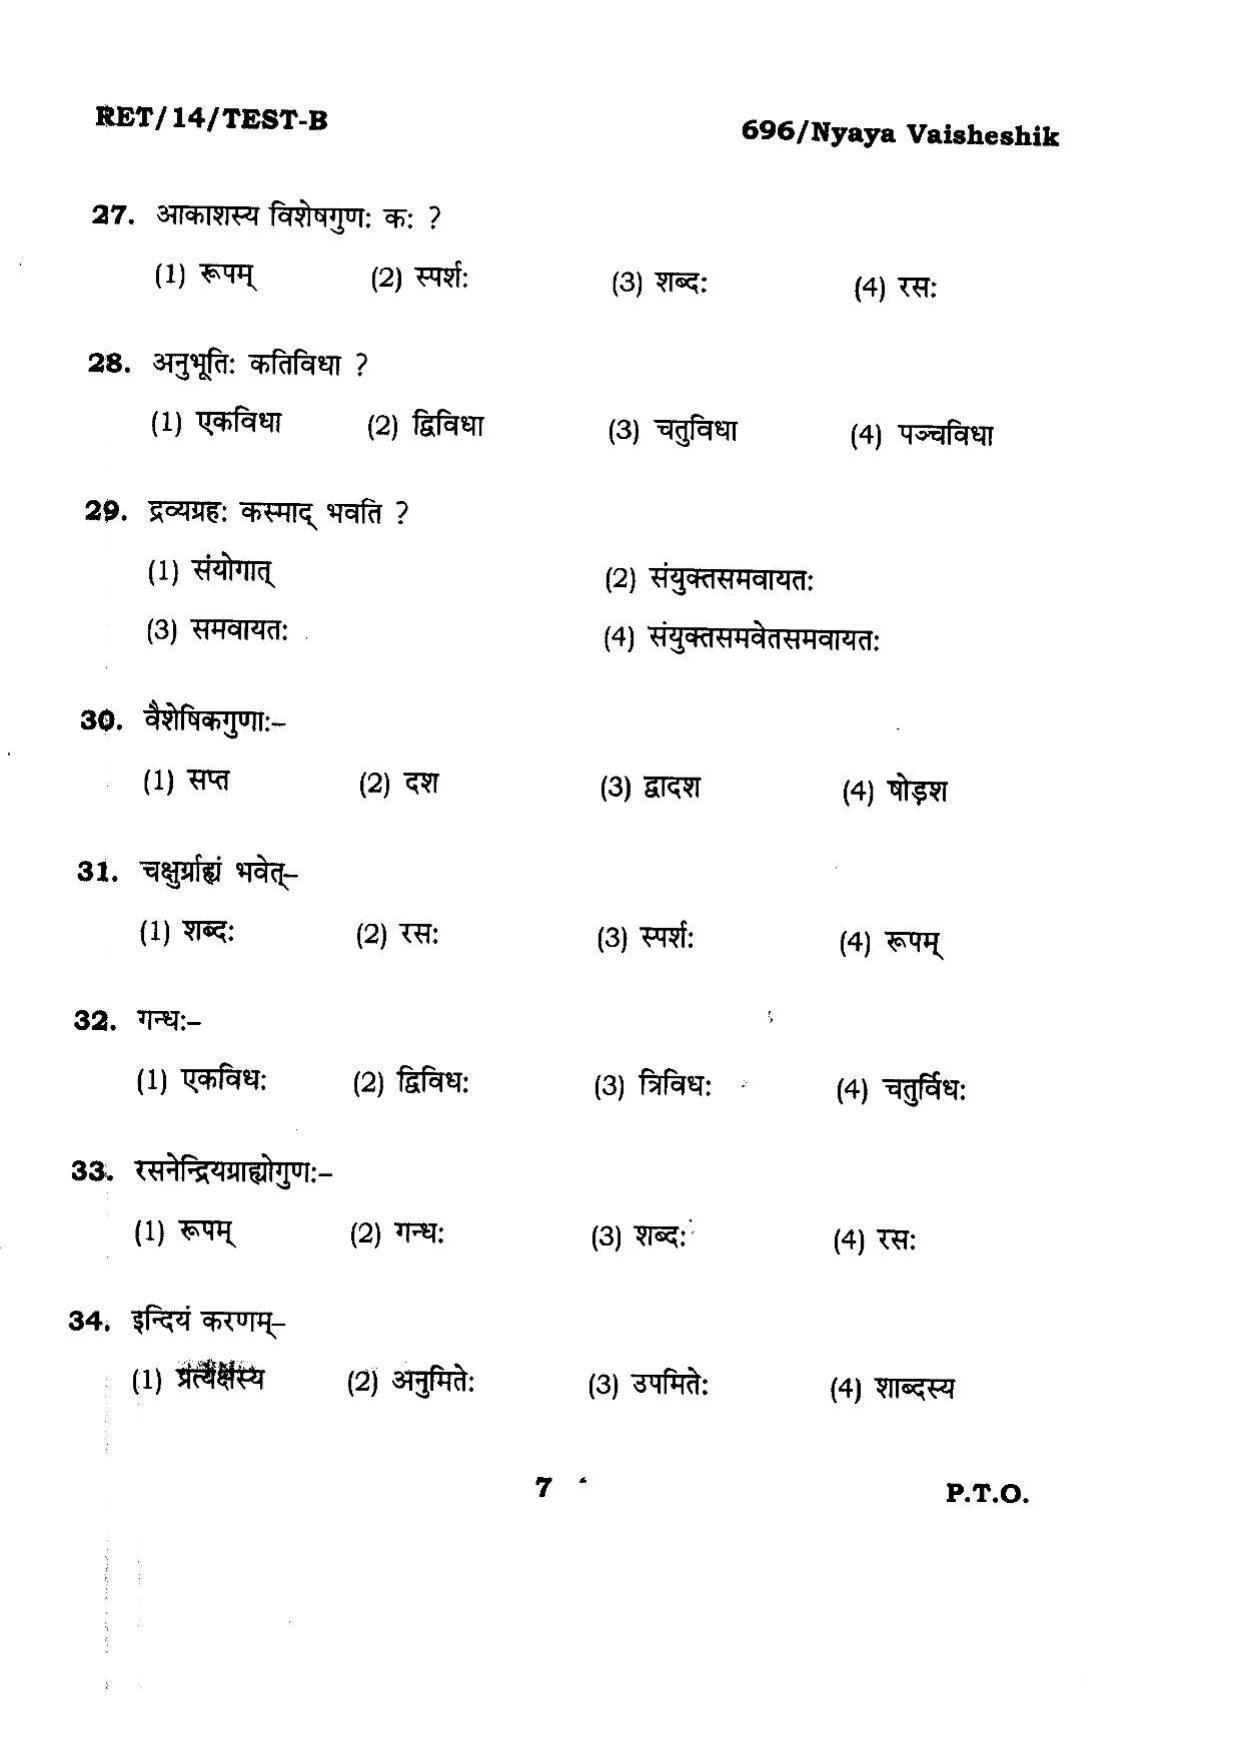 BHU RET Nyaya Vaisheshik 2014 Question Paper - Page 7